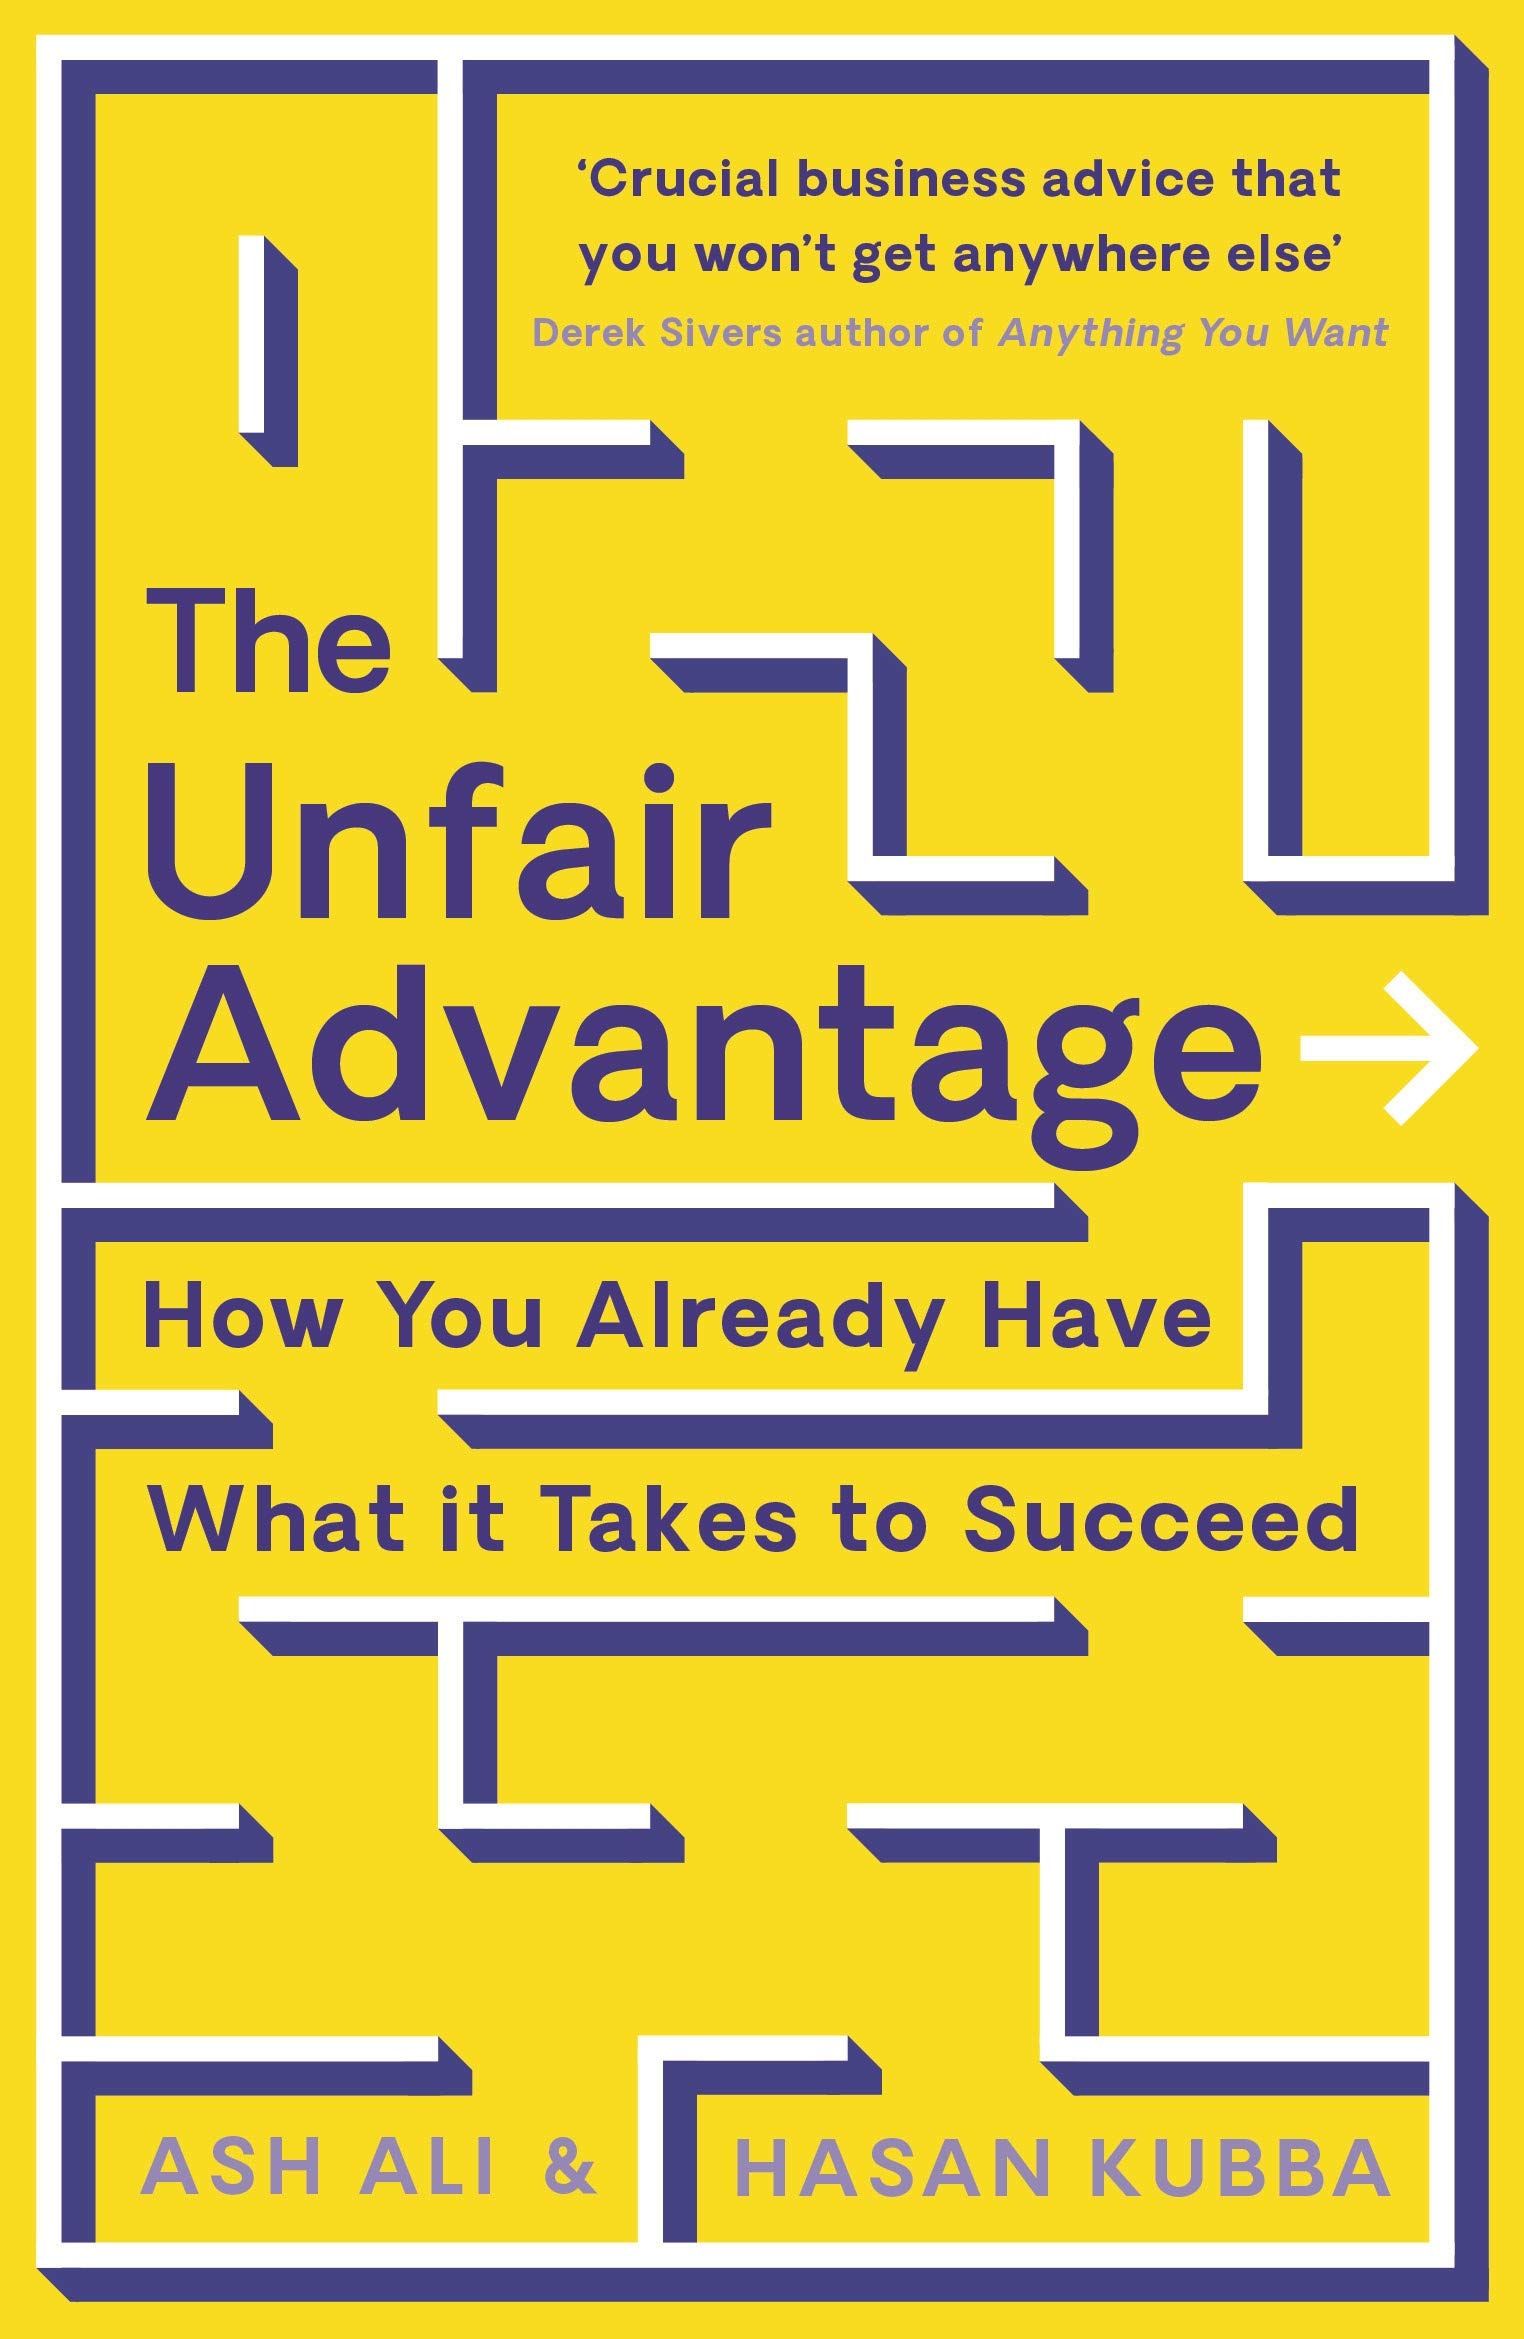 The Unfair Advantages of life - Part 2